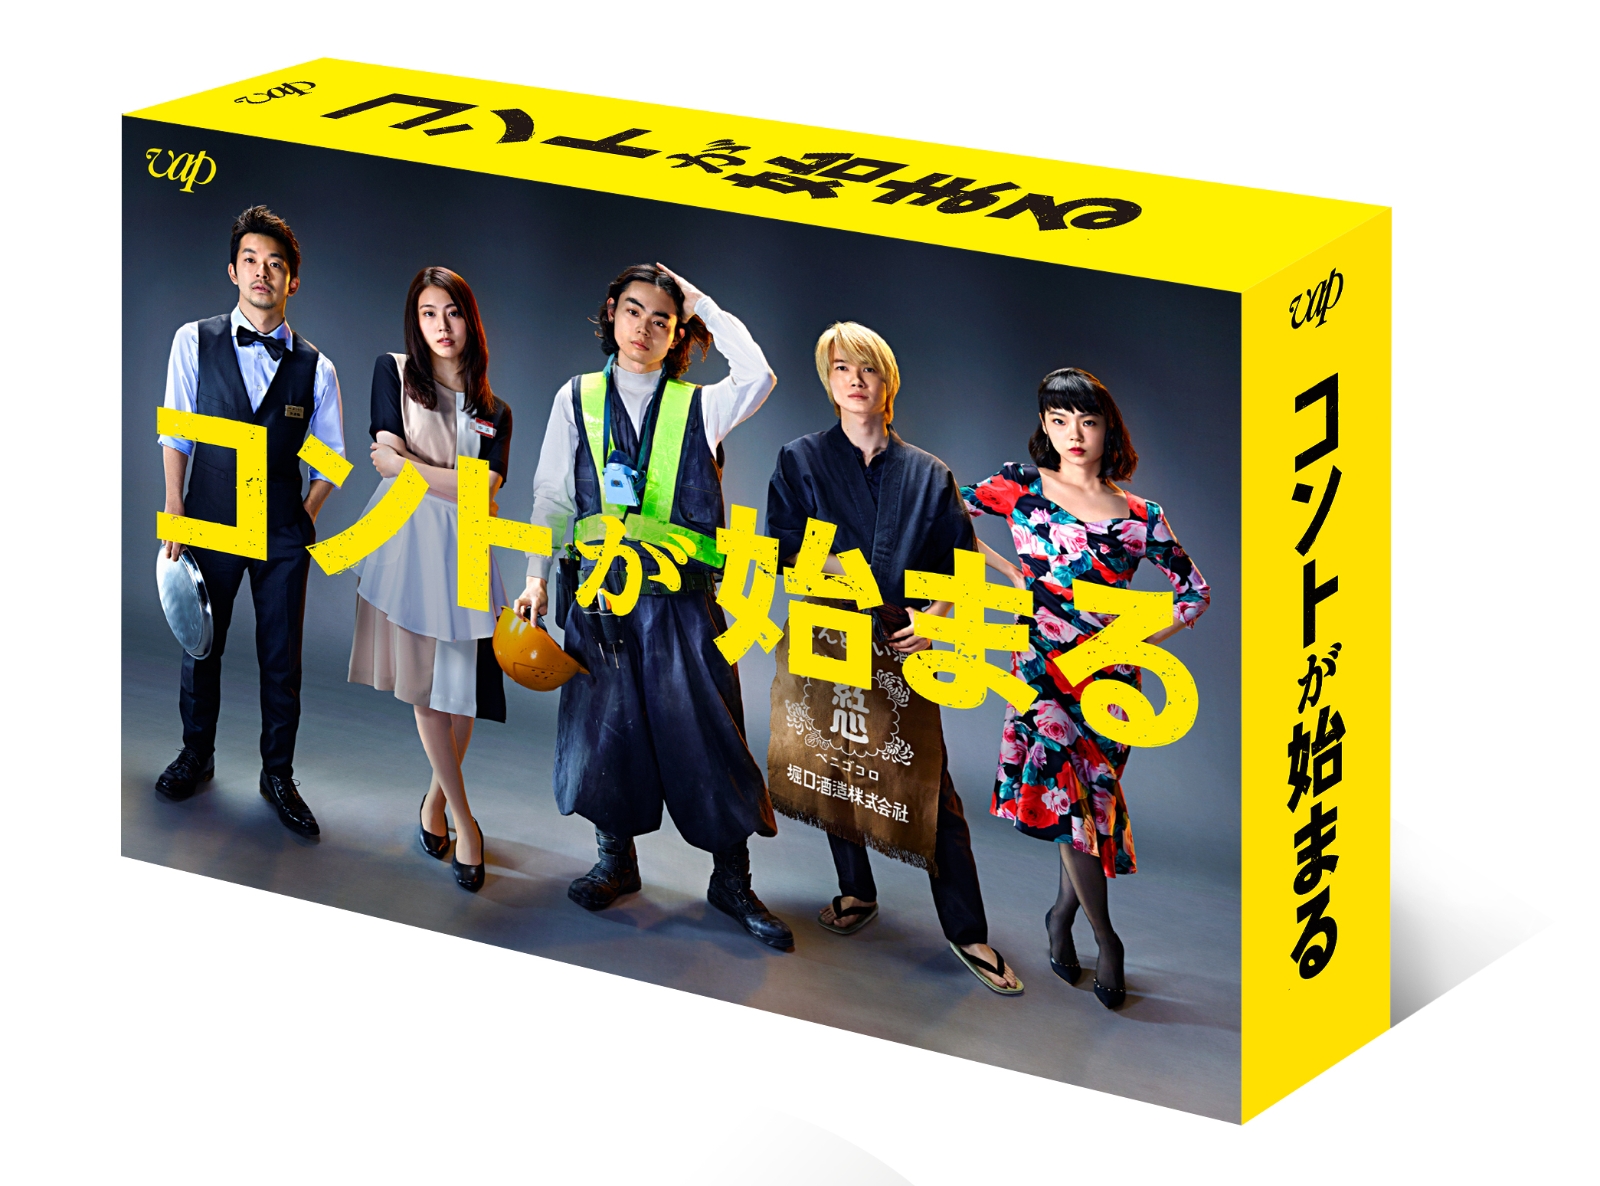 楽天ブックス: コントが始まる DVD-BOX - 菅田将暉 - 4988021140942 : DVD